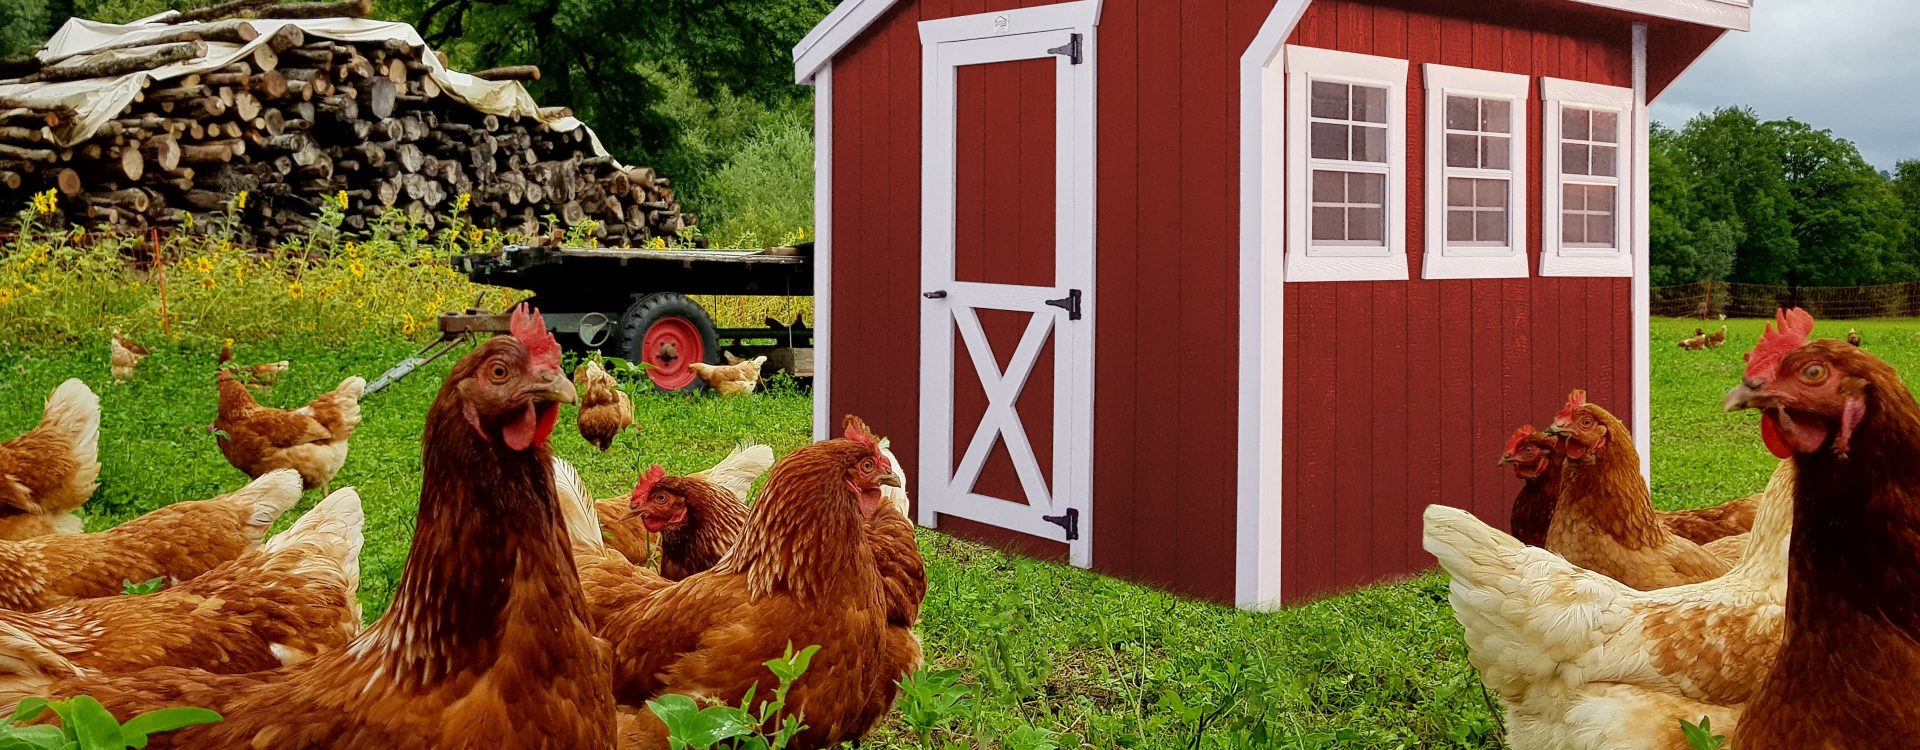 small chicken coop hen house in iowa